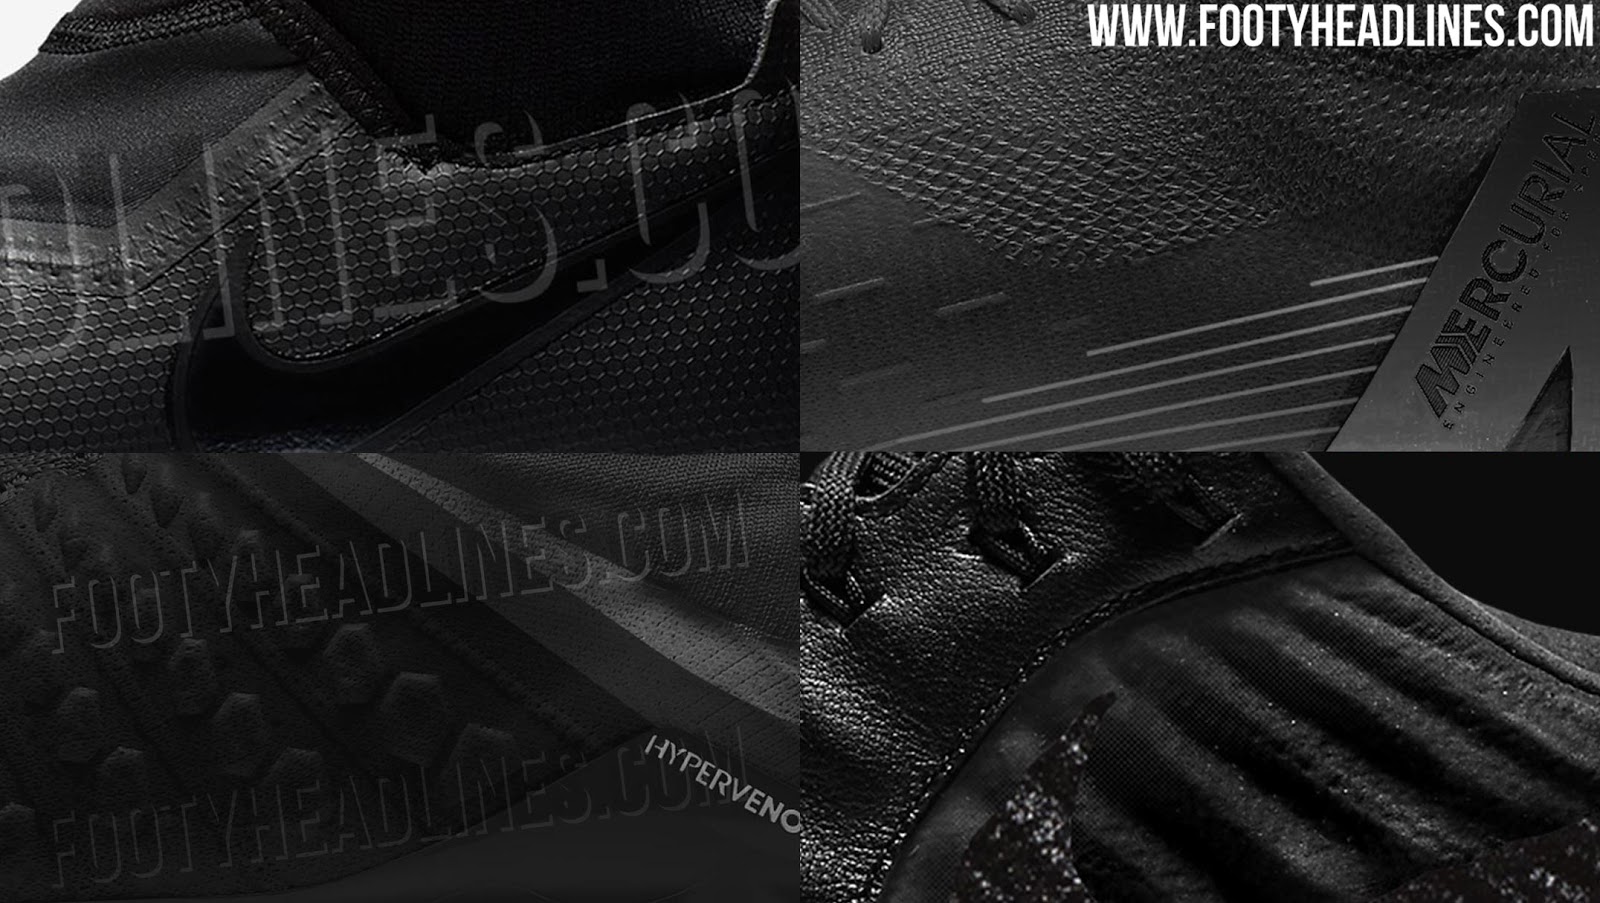 The Nike Phantom Venom Elite FG Victory football boot is